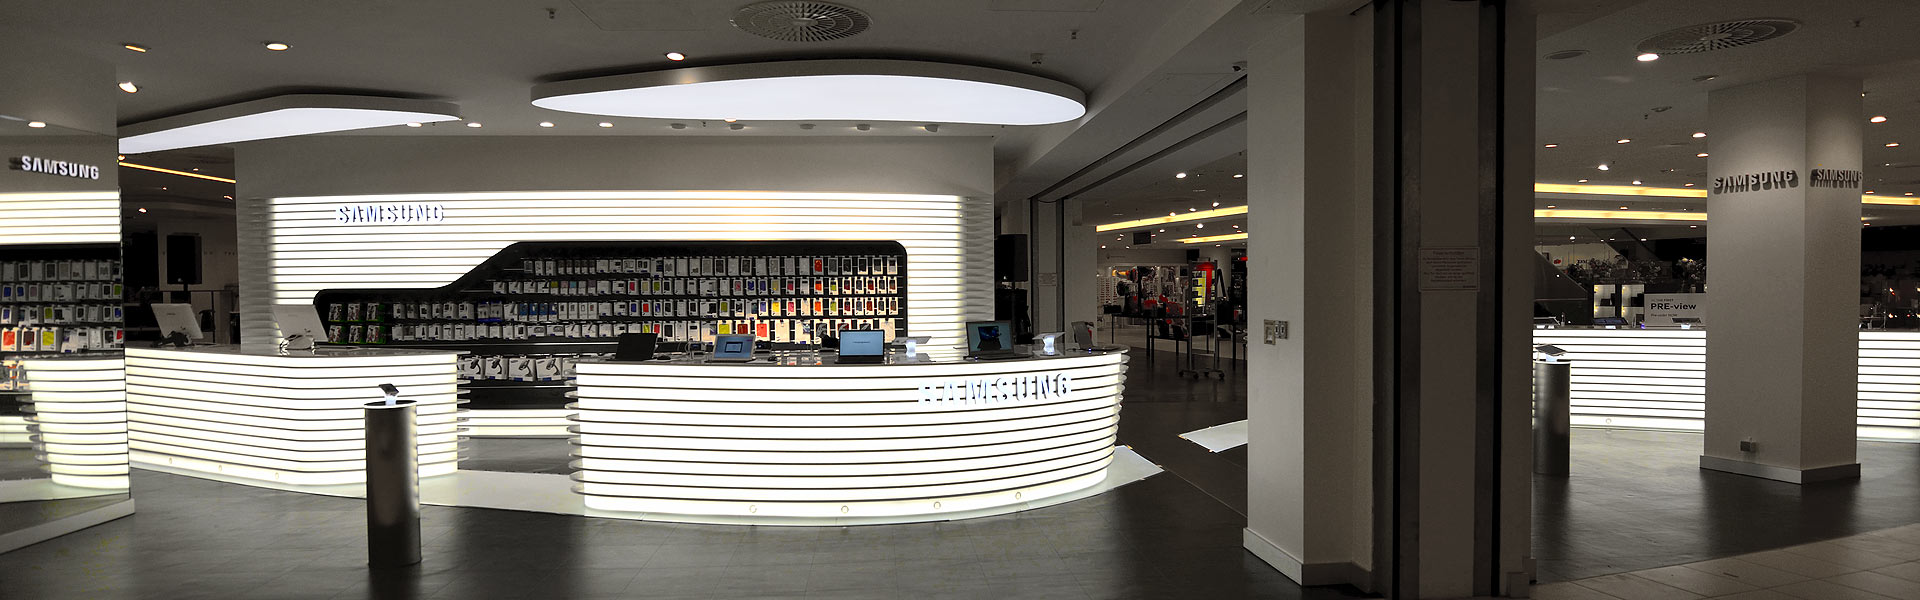 Samsung KaDeWe Luxuy Store 2014 Panorama Flashship Shopausbau Shopgestaltung Standorterschließung